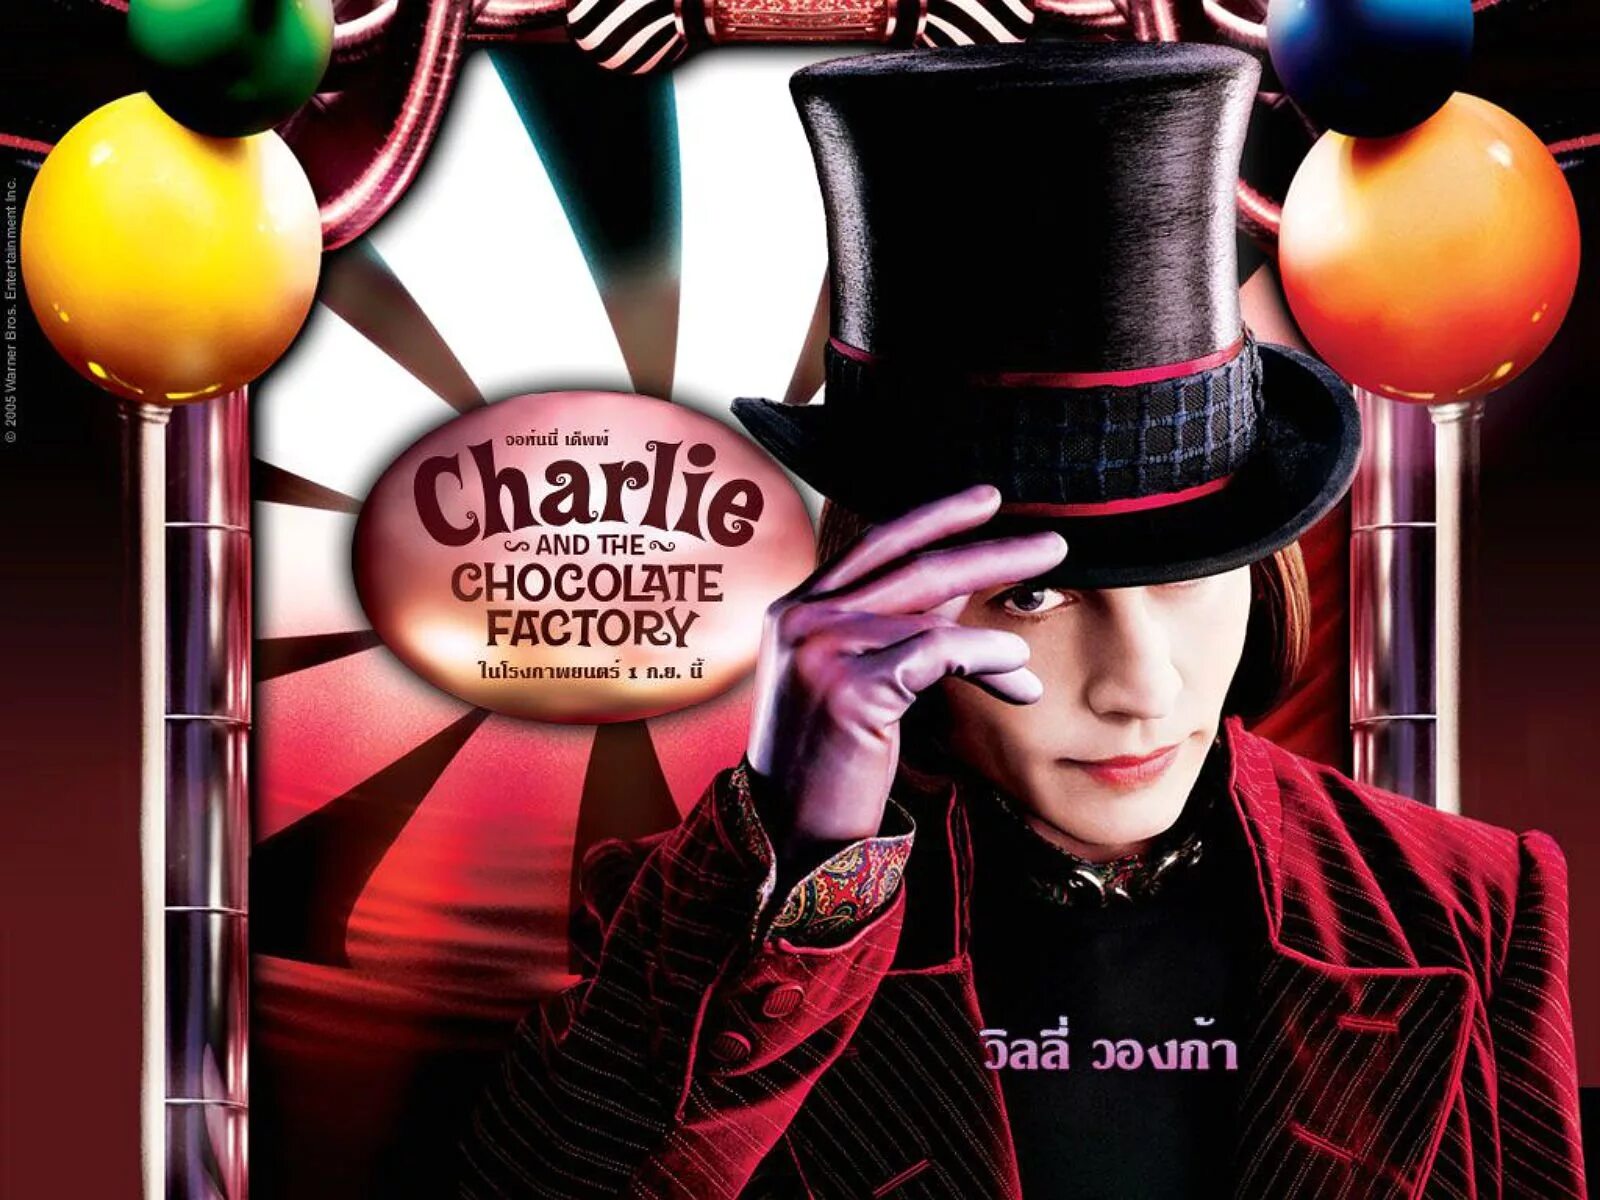 Через шоколадная фабрика. Джонни Депп Чарли и шоколадная фабрика. Чарли и шоколадная фабрика / Charlie and the Chocolate Factory (2005).